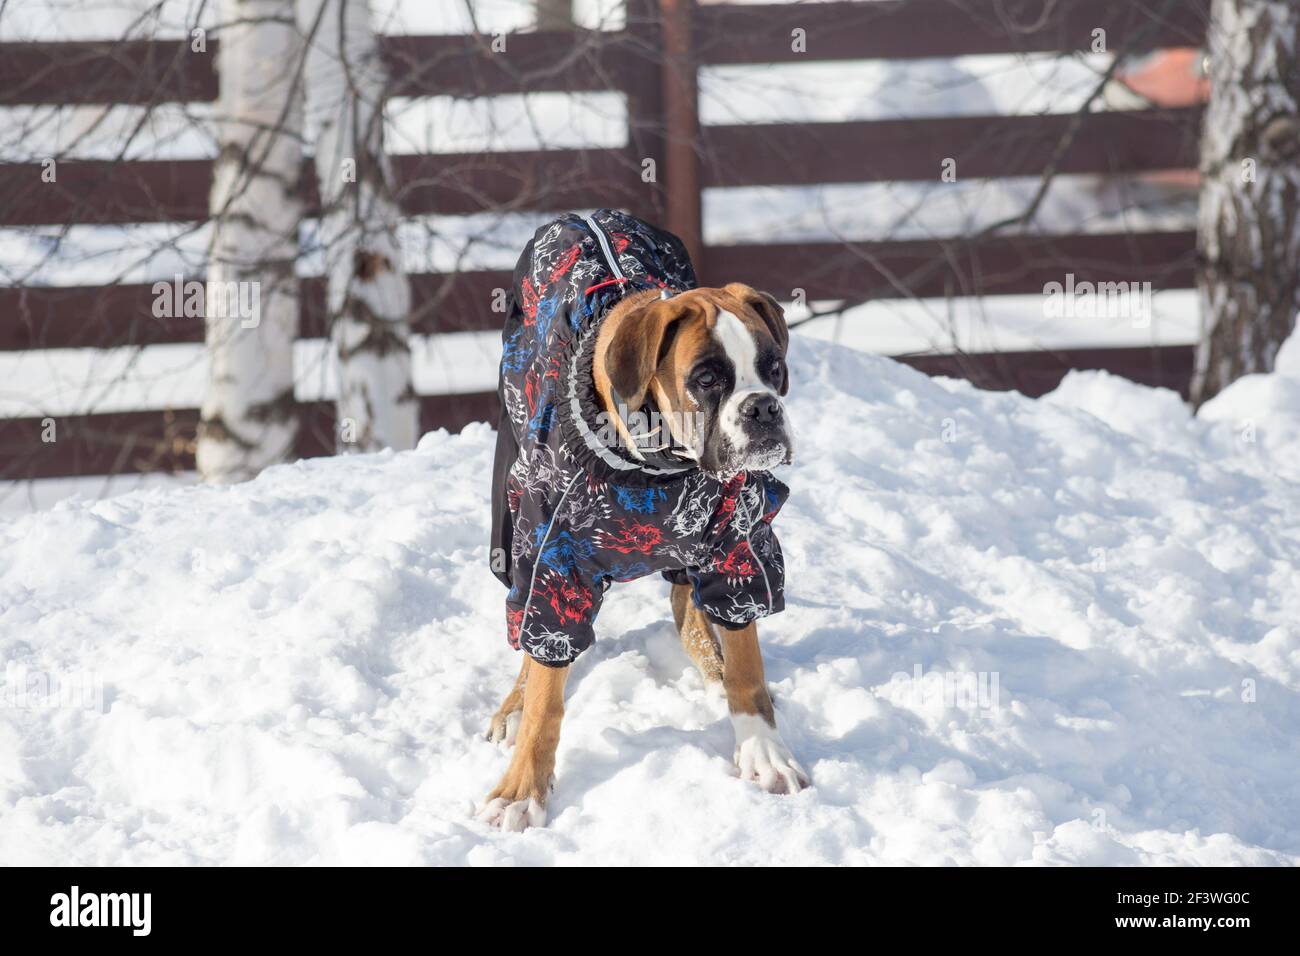 Carino cucciolo tedesco di pugile in un bellissimo abbigliamento per animali domestici è in piedi su una neve bianca nel parco invernale. Animali domestici. Cane purebred. Foto Stock